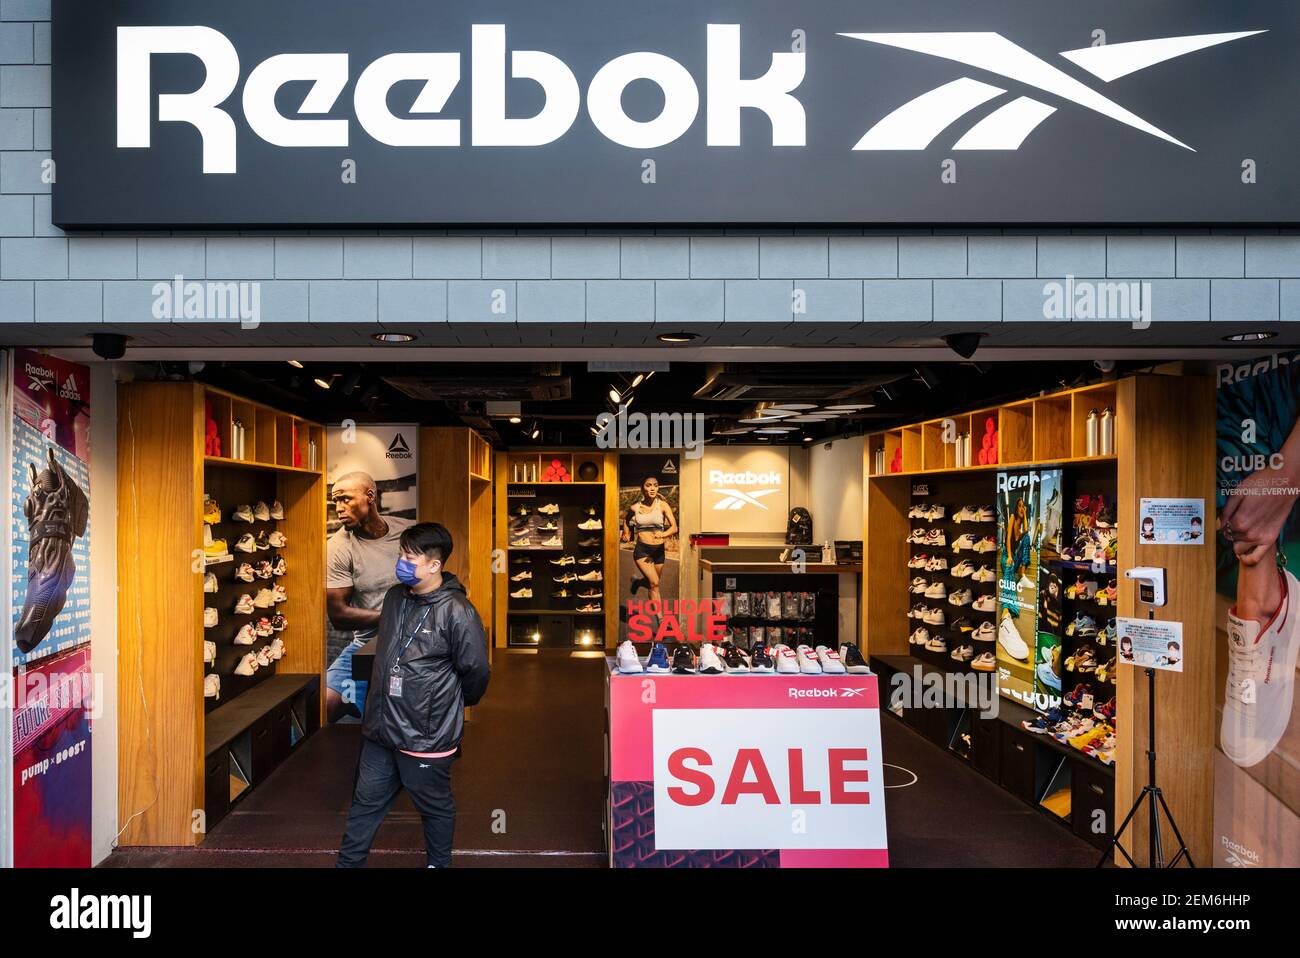 Reebok store immagini e fotografie stock ad alta risoluzione - Alamy